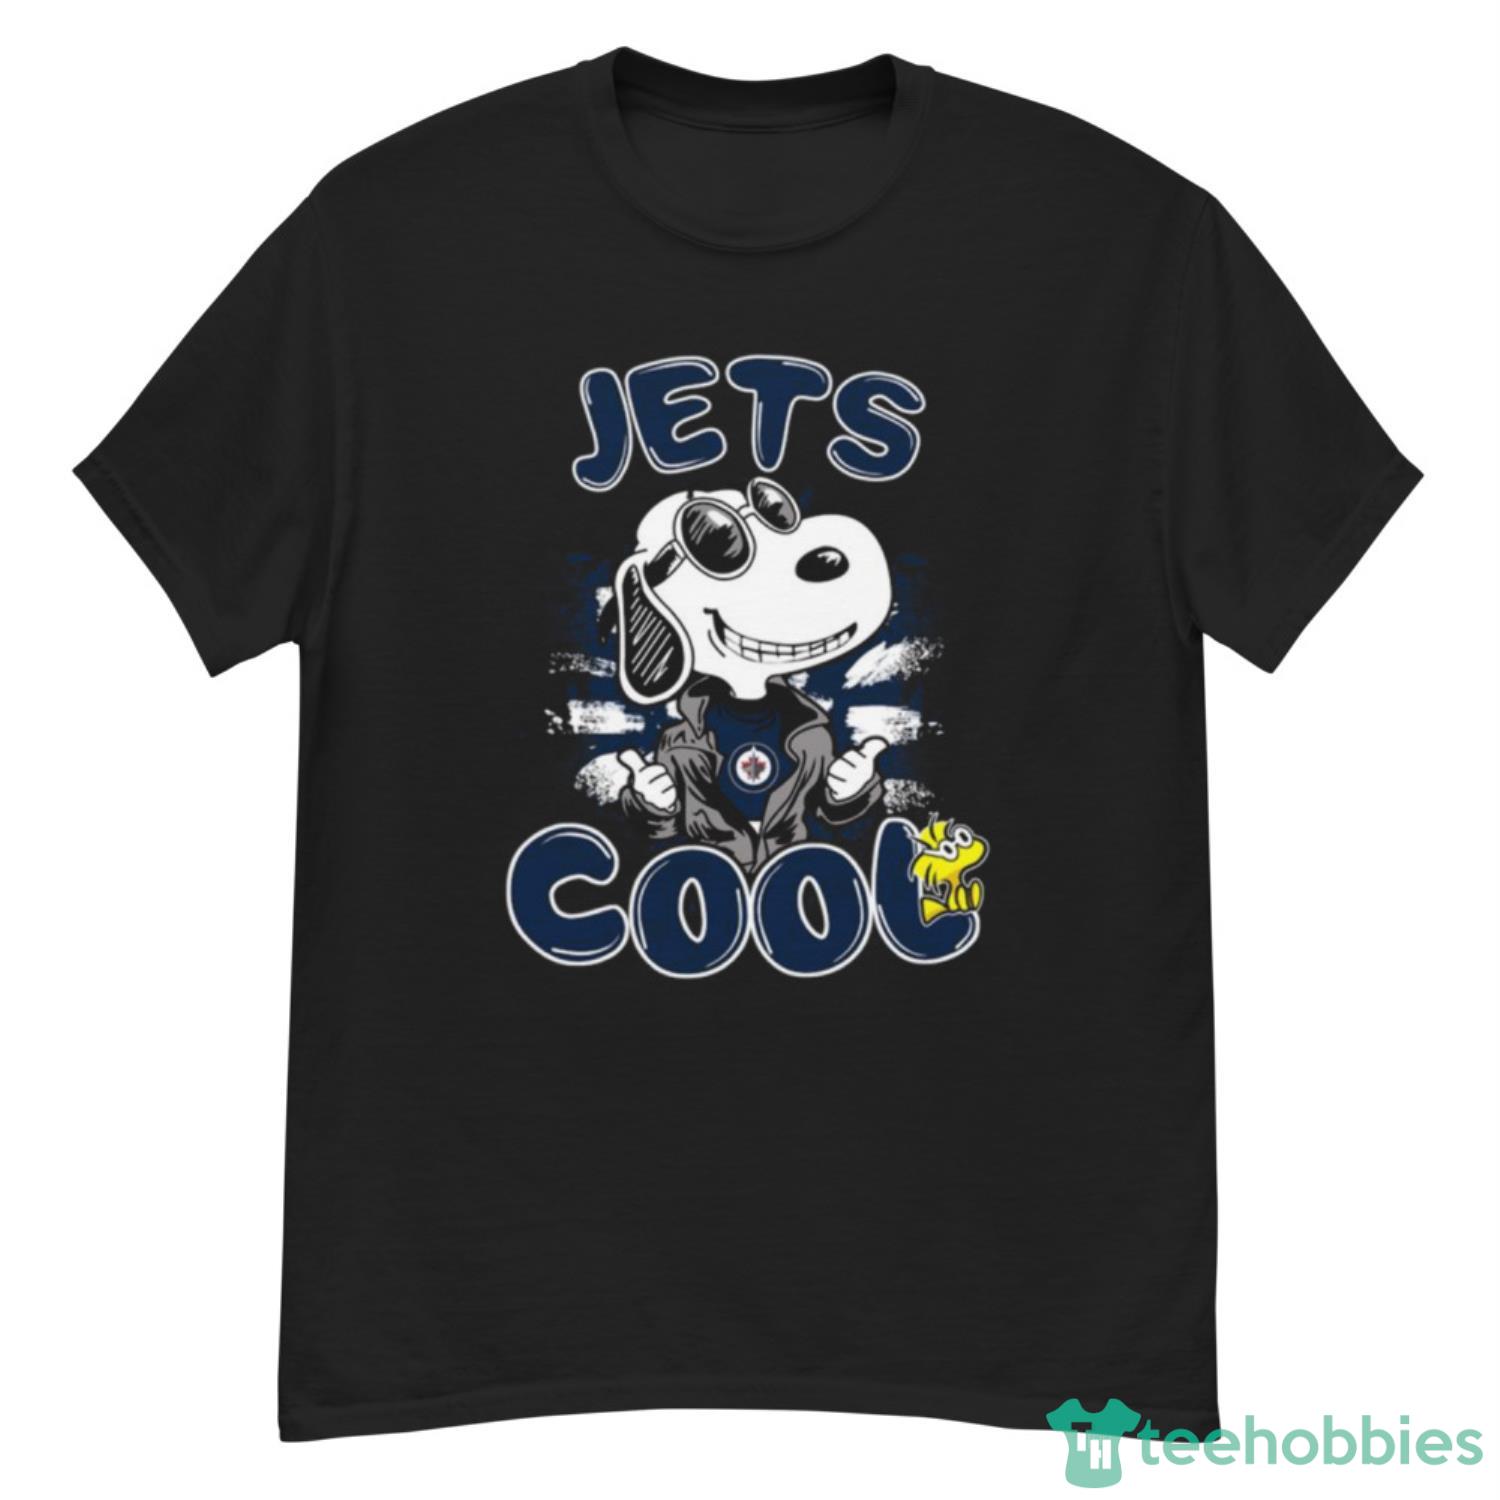 NHL Hockey Winnipeg Jets Cool Snoopy Shirt T Shirt - G500 Men’s Classic T-Shirt